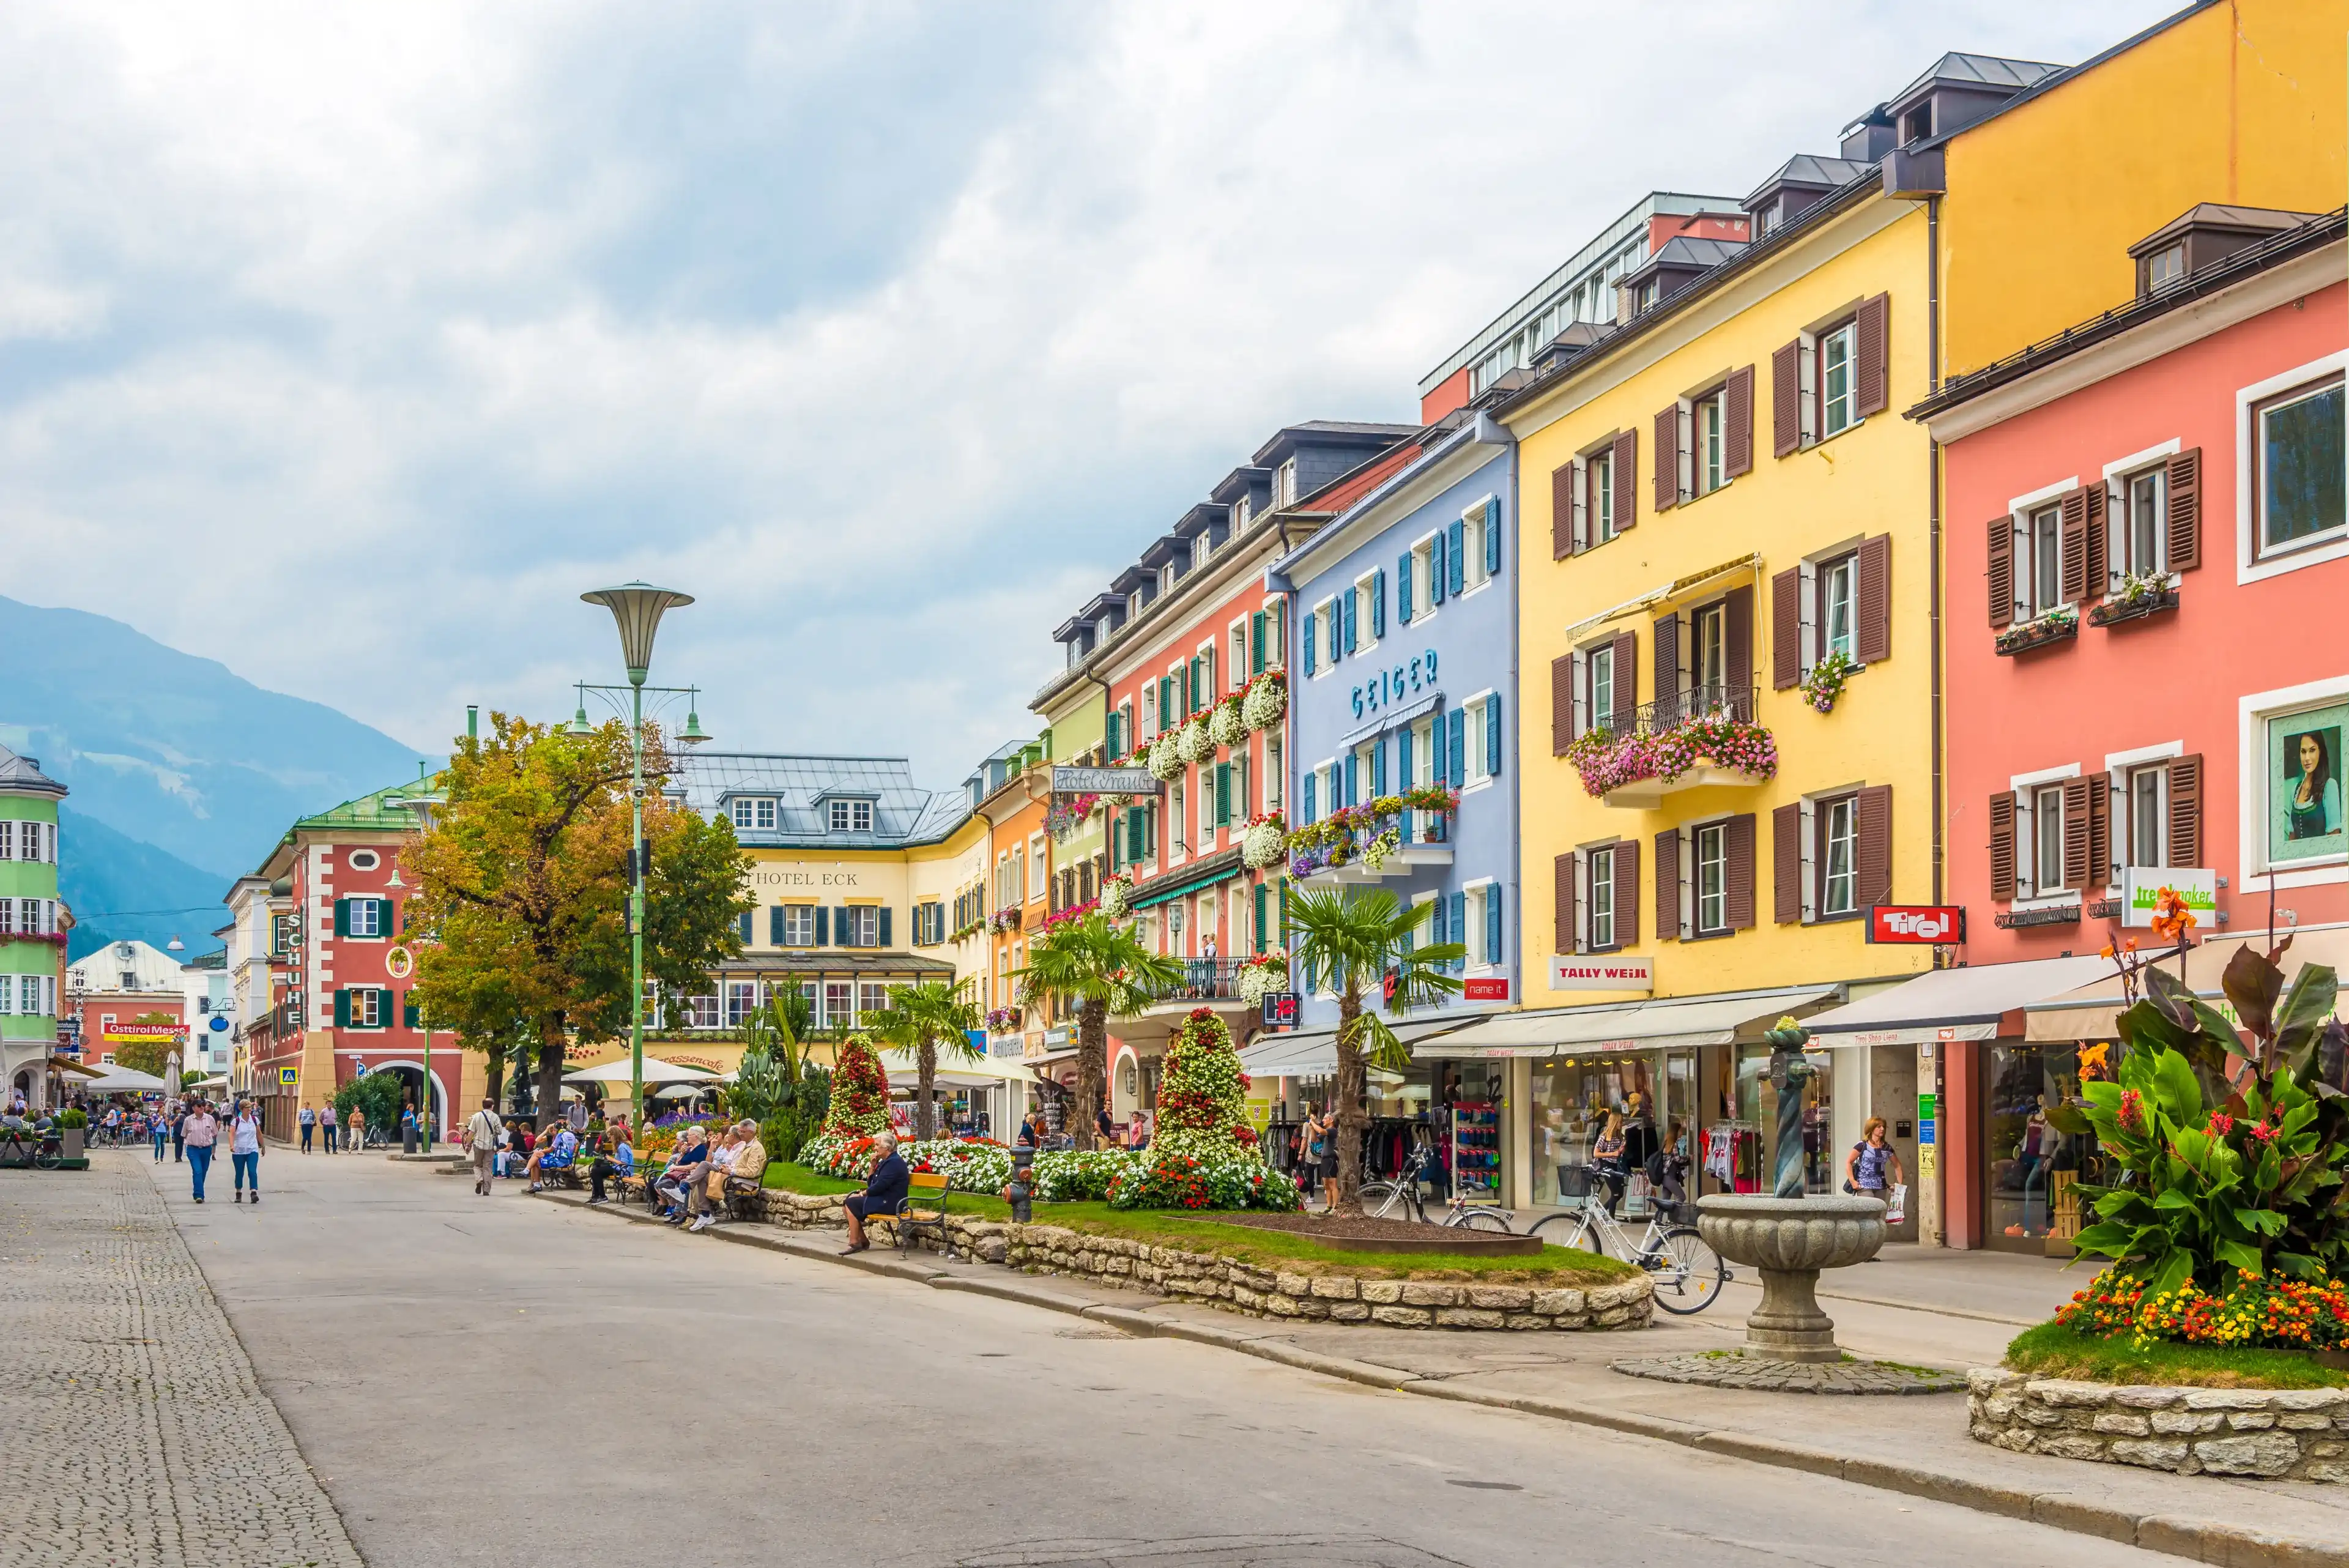 Best Lienz hotels. Cheap hotels in Lienz, Austria